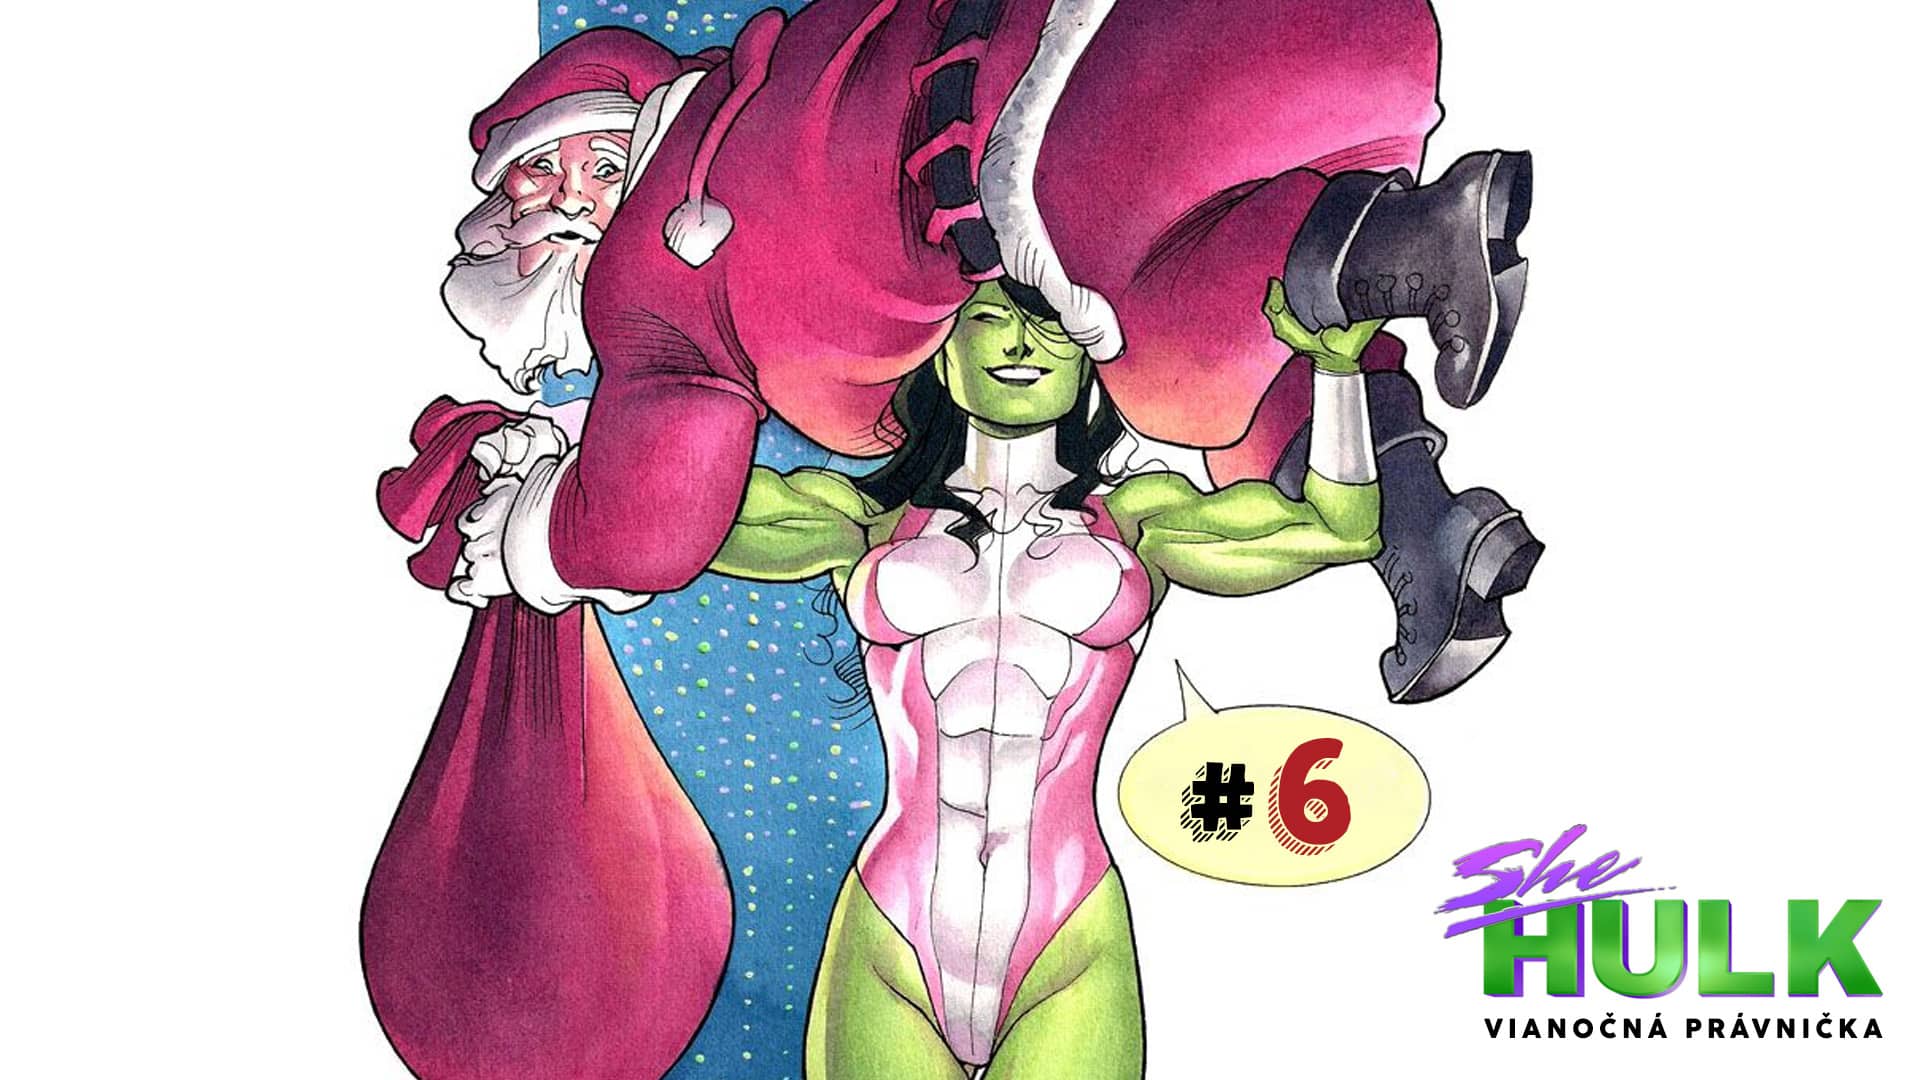 She-Hulk: Vianočná právnička #6